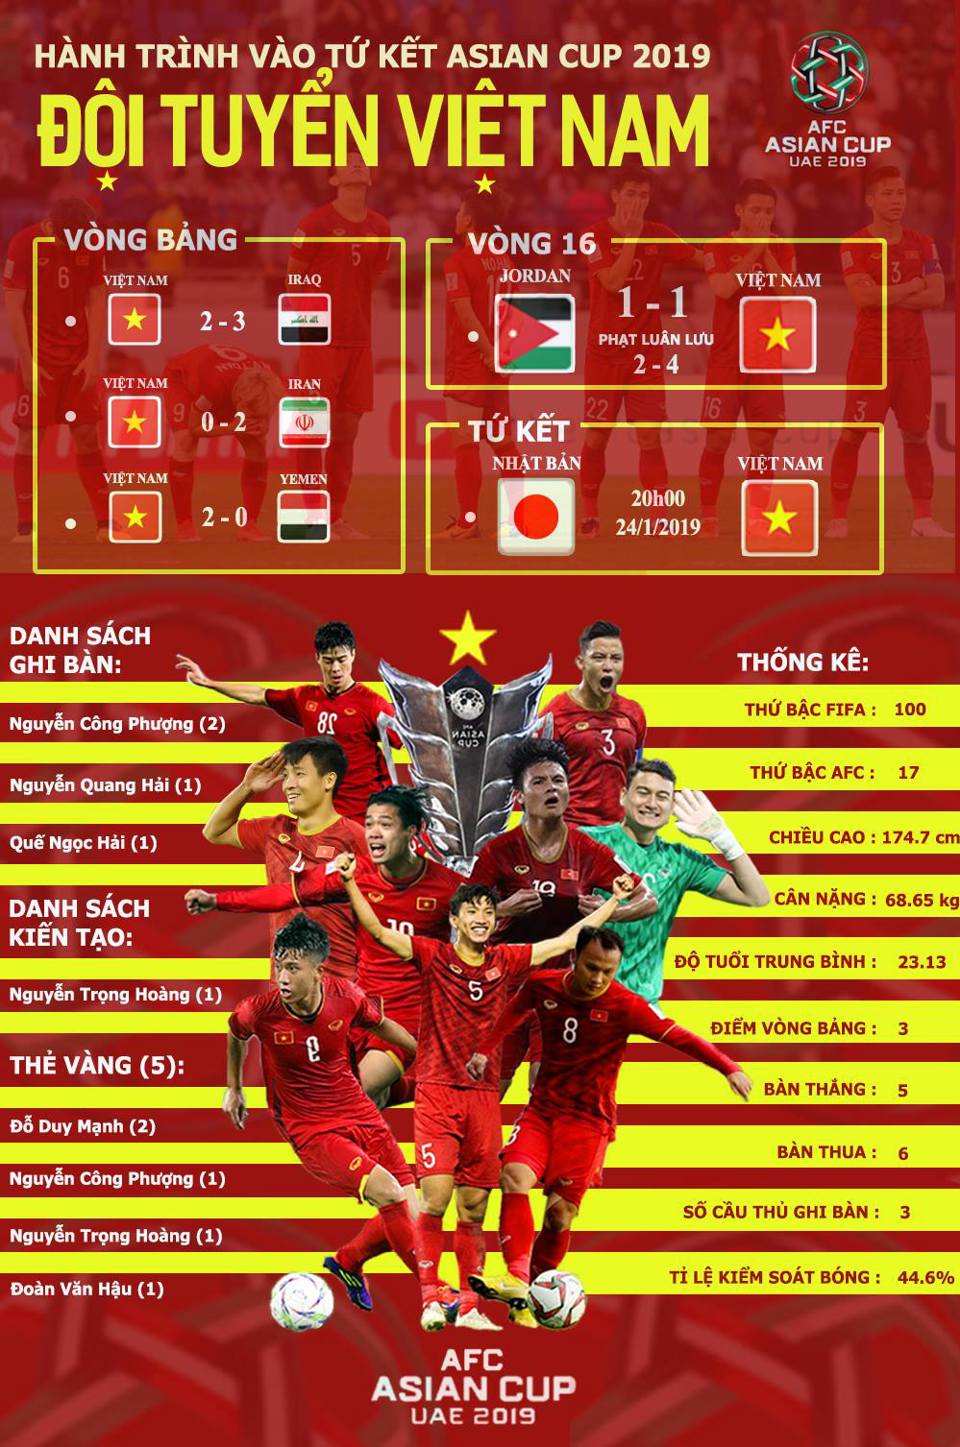 Hành trình kì diệu của đội tuyển Việt Nam tại Asian Cup 2019 - Ảnh 1